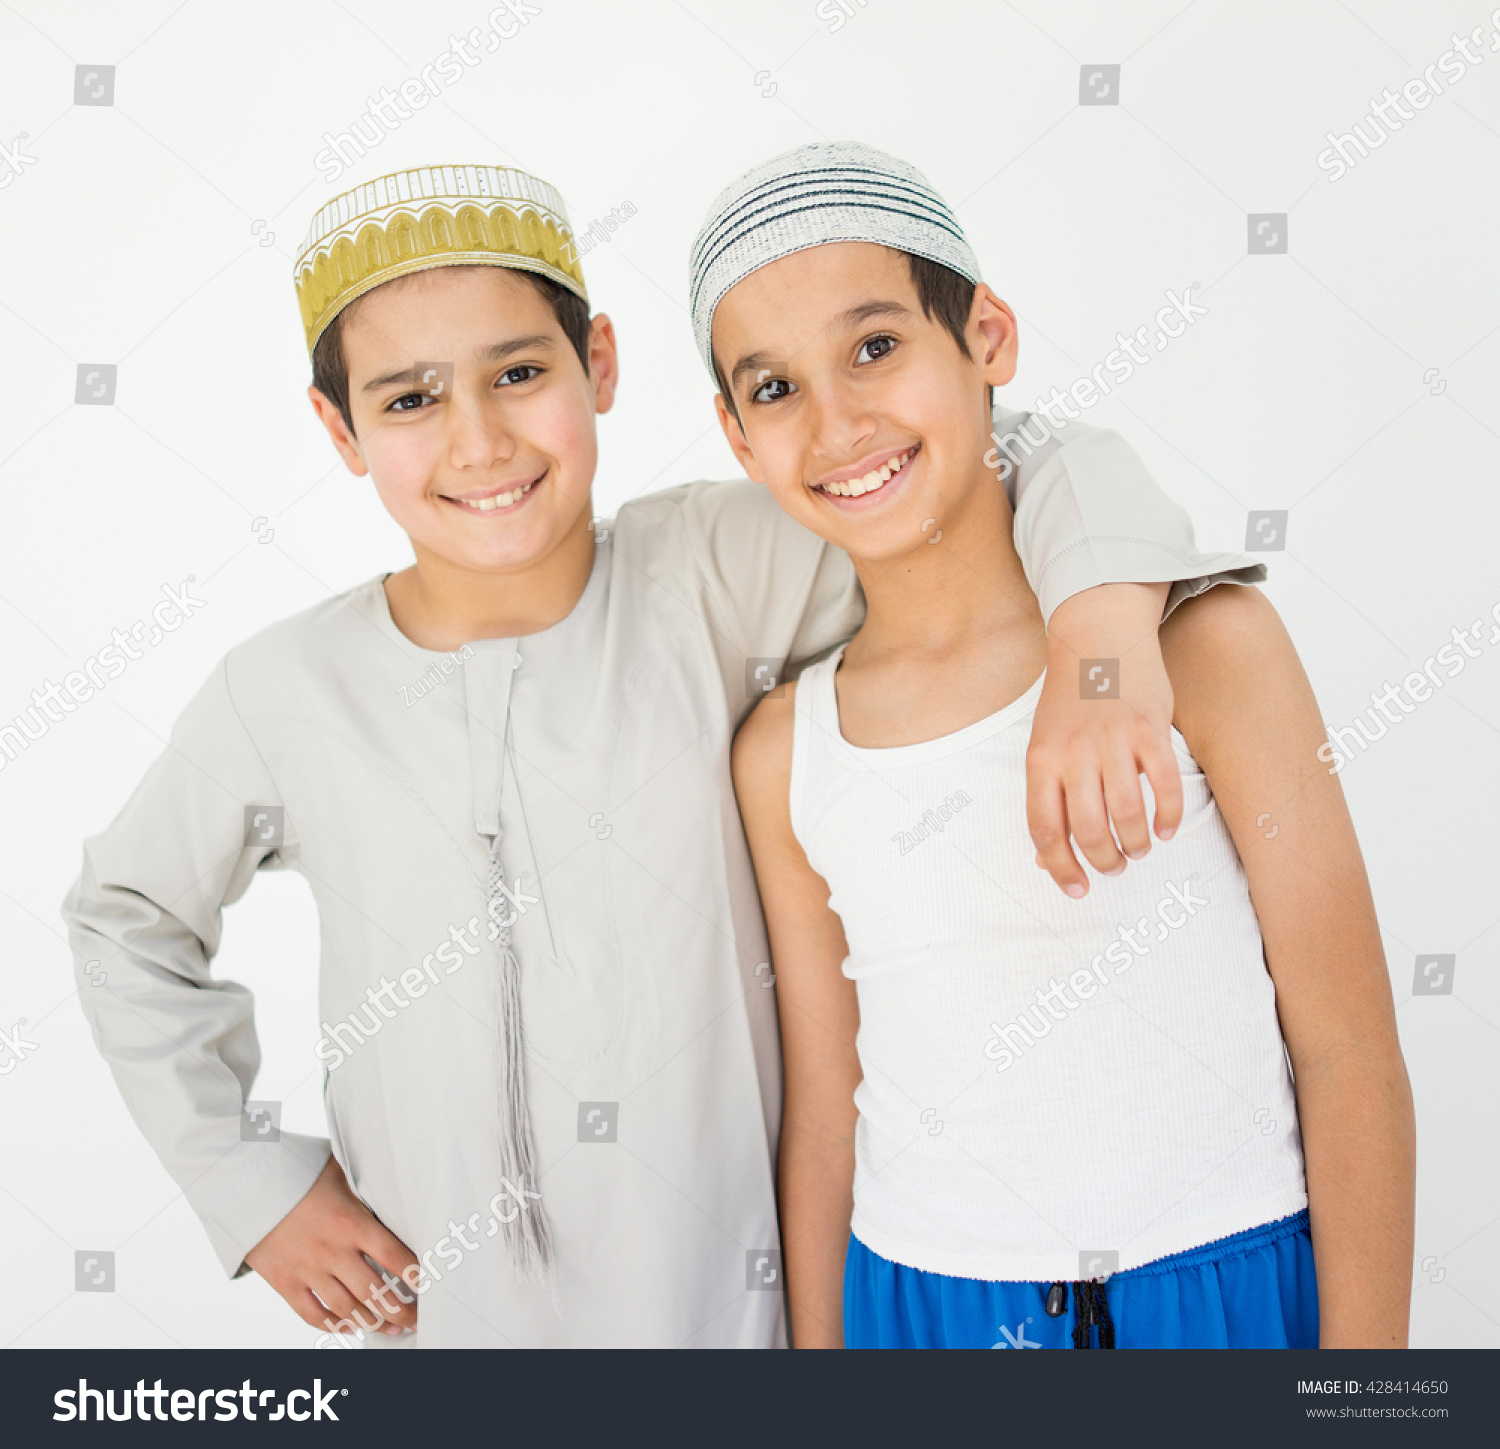 Shy arab boy photo